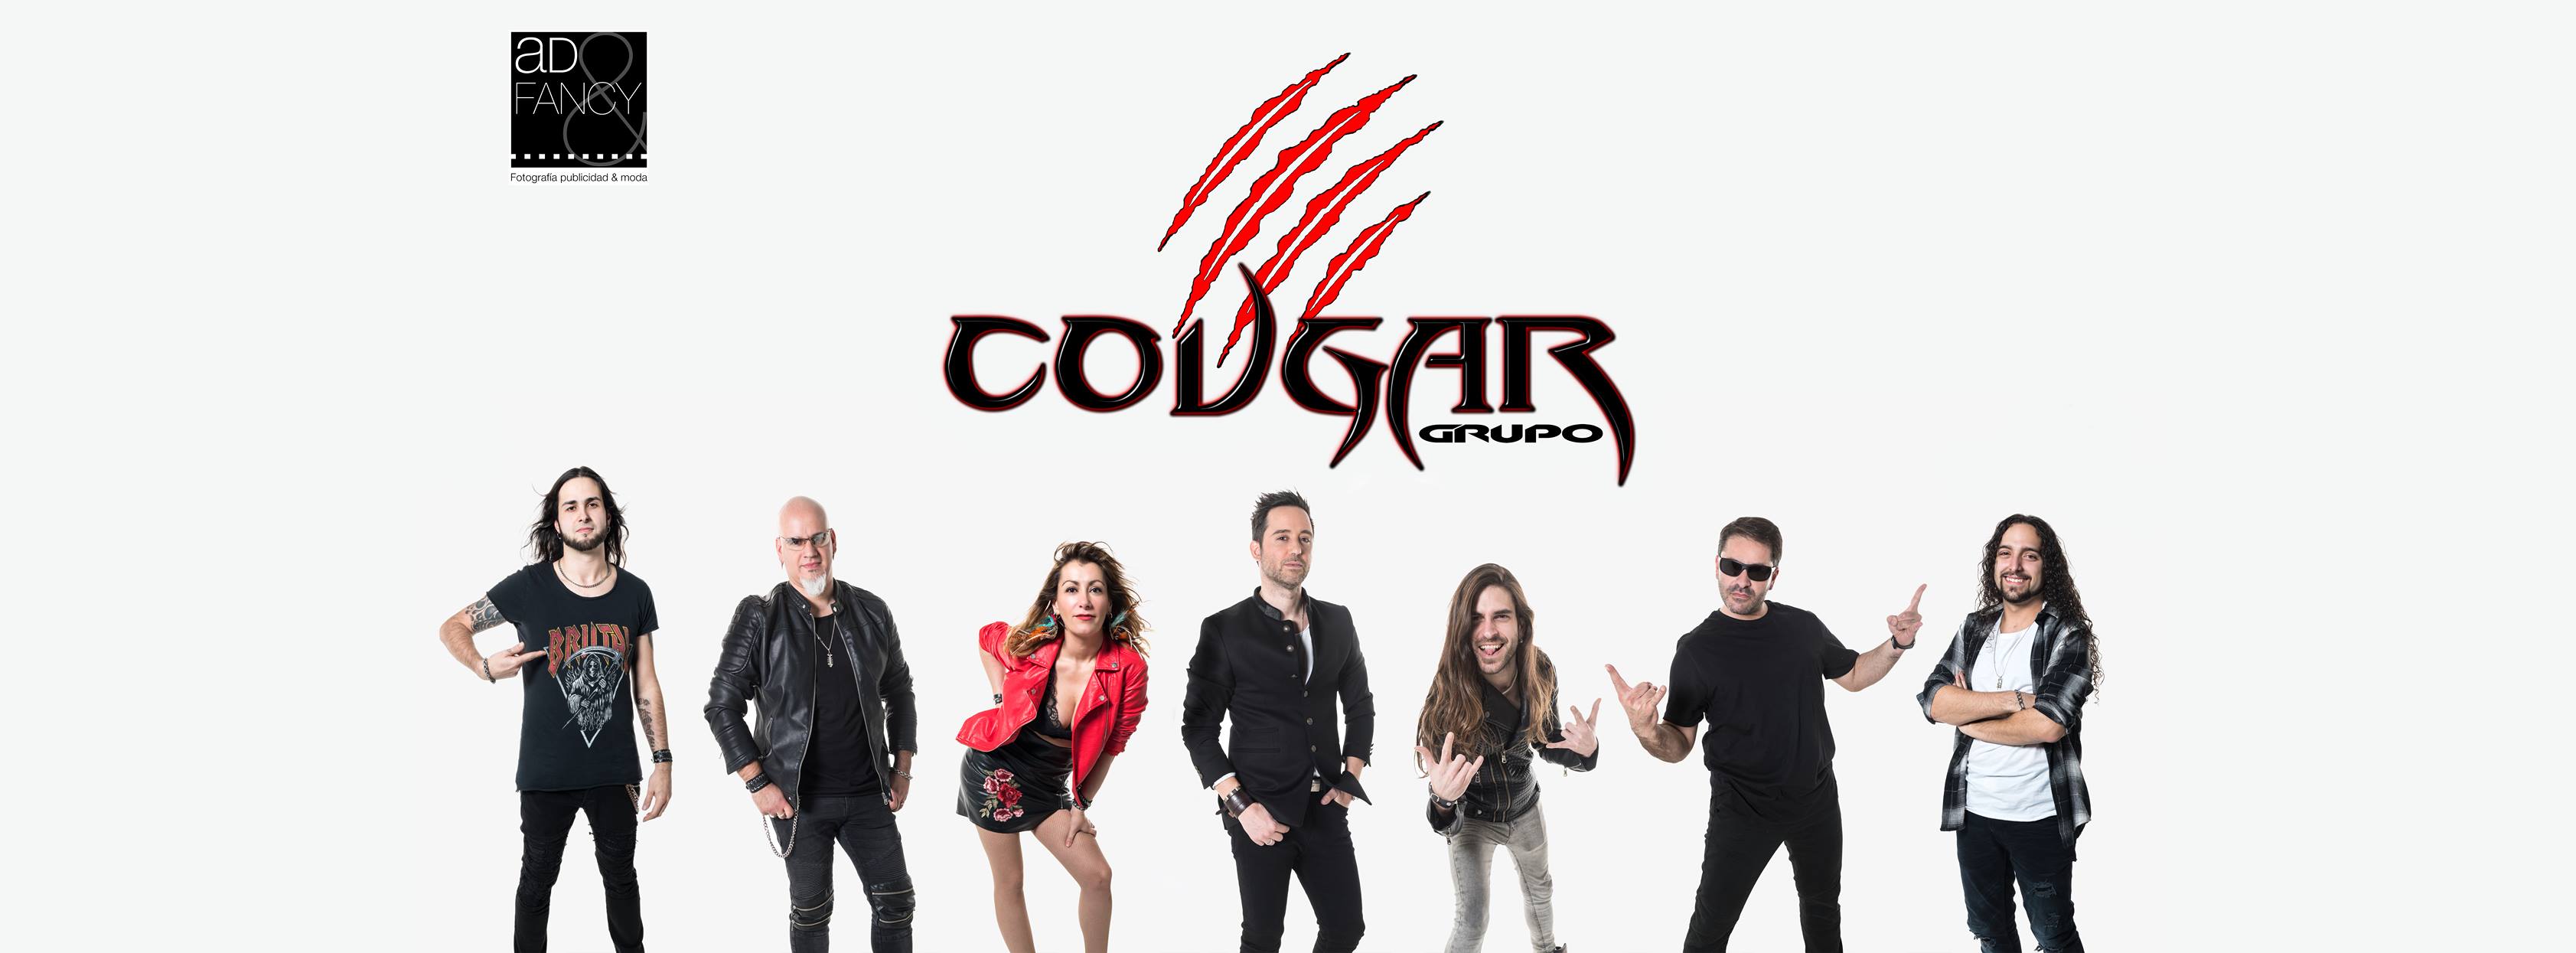 Grupo Cougar